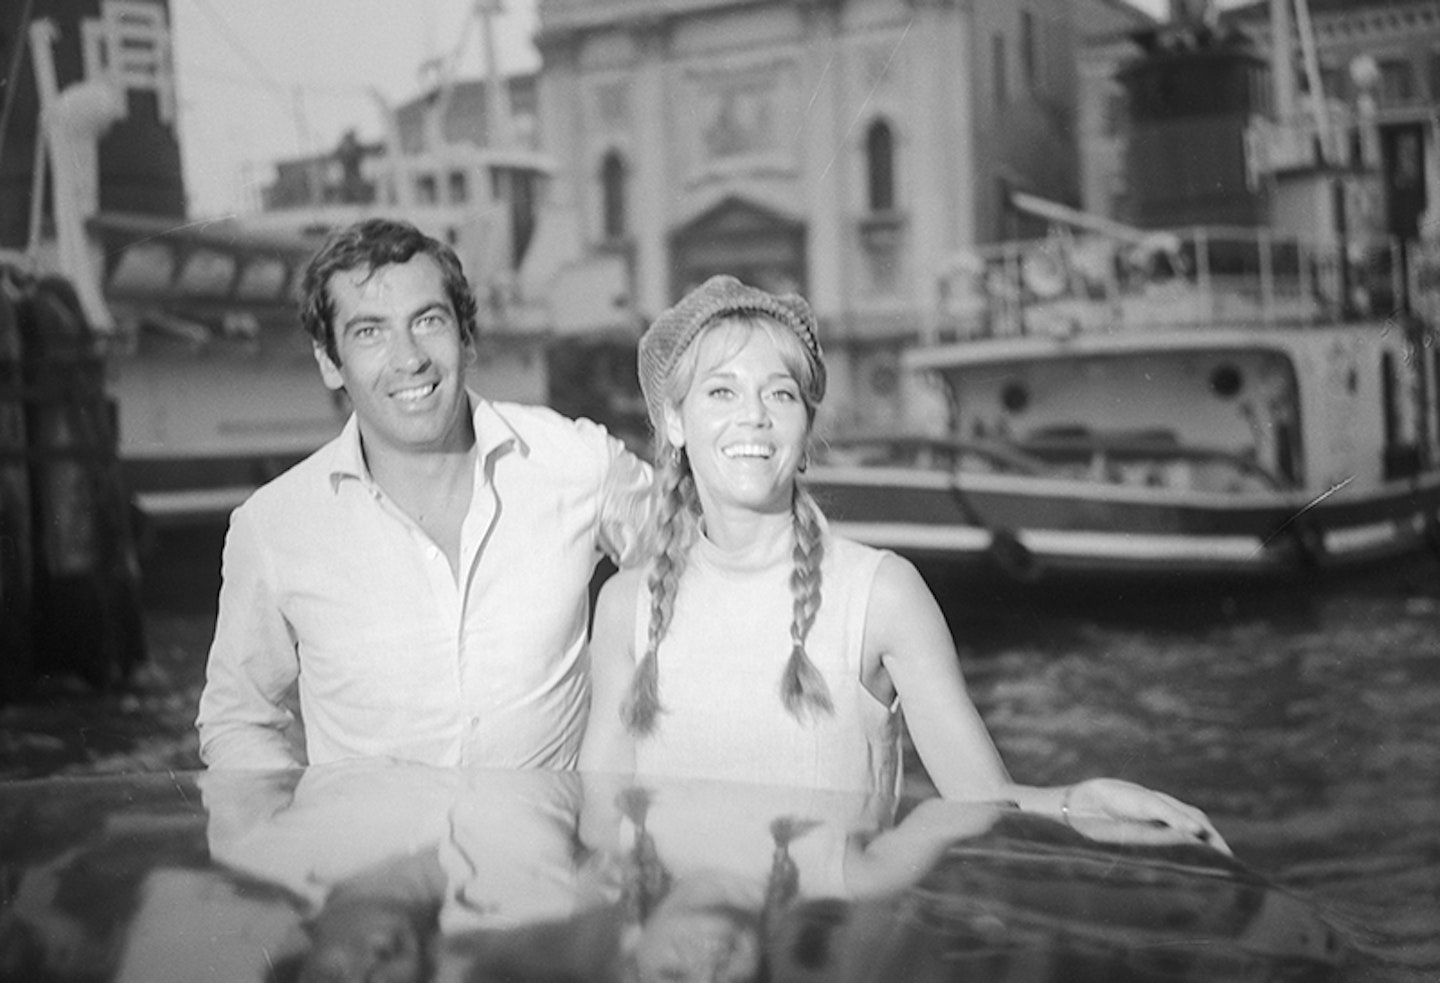 Roger Vadim and Jane Fonda in Motorboat